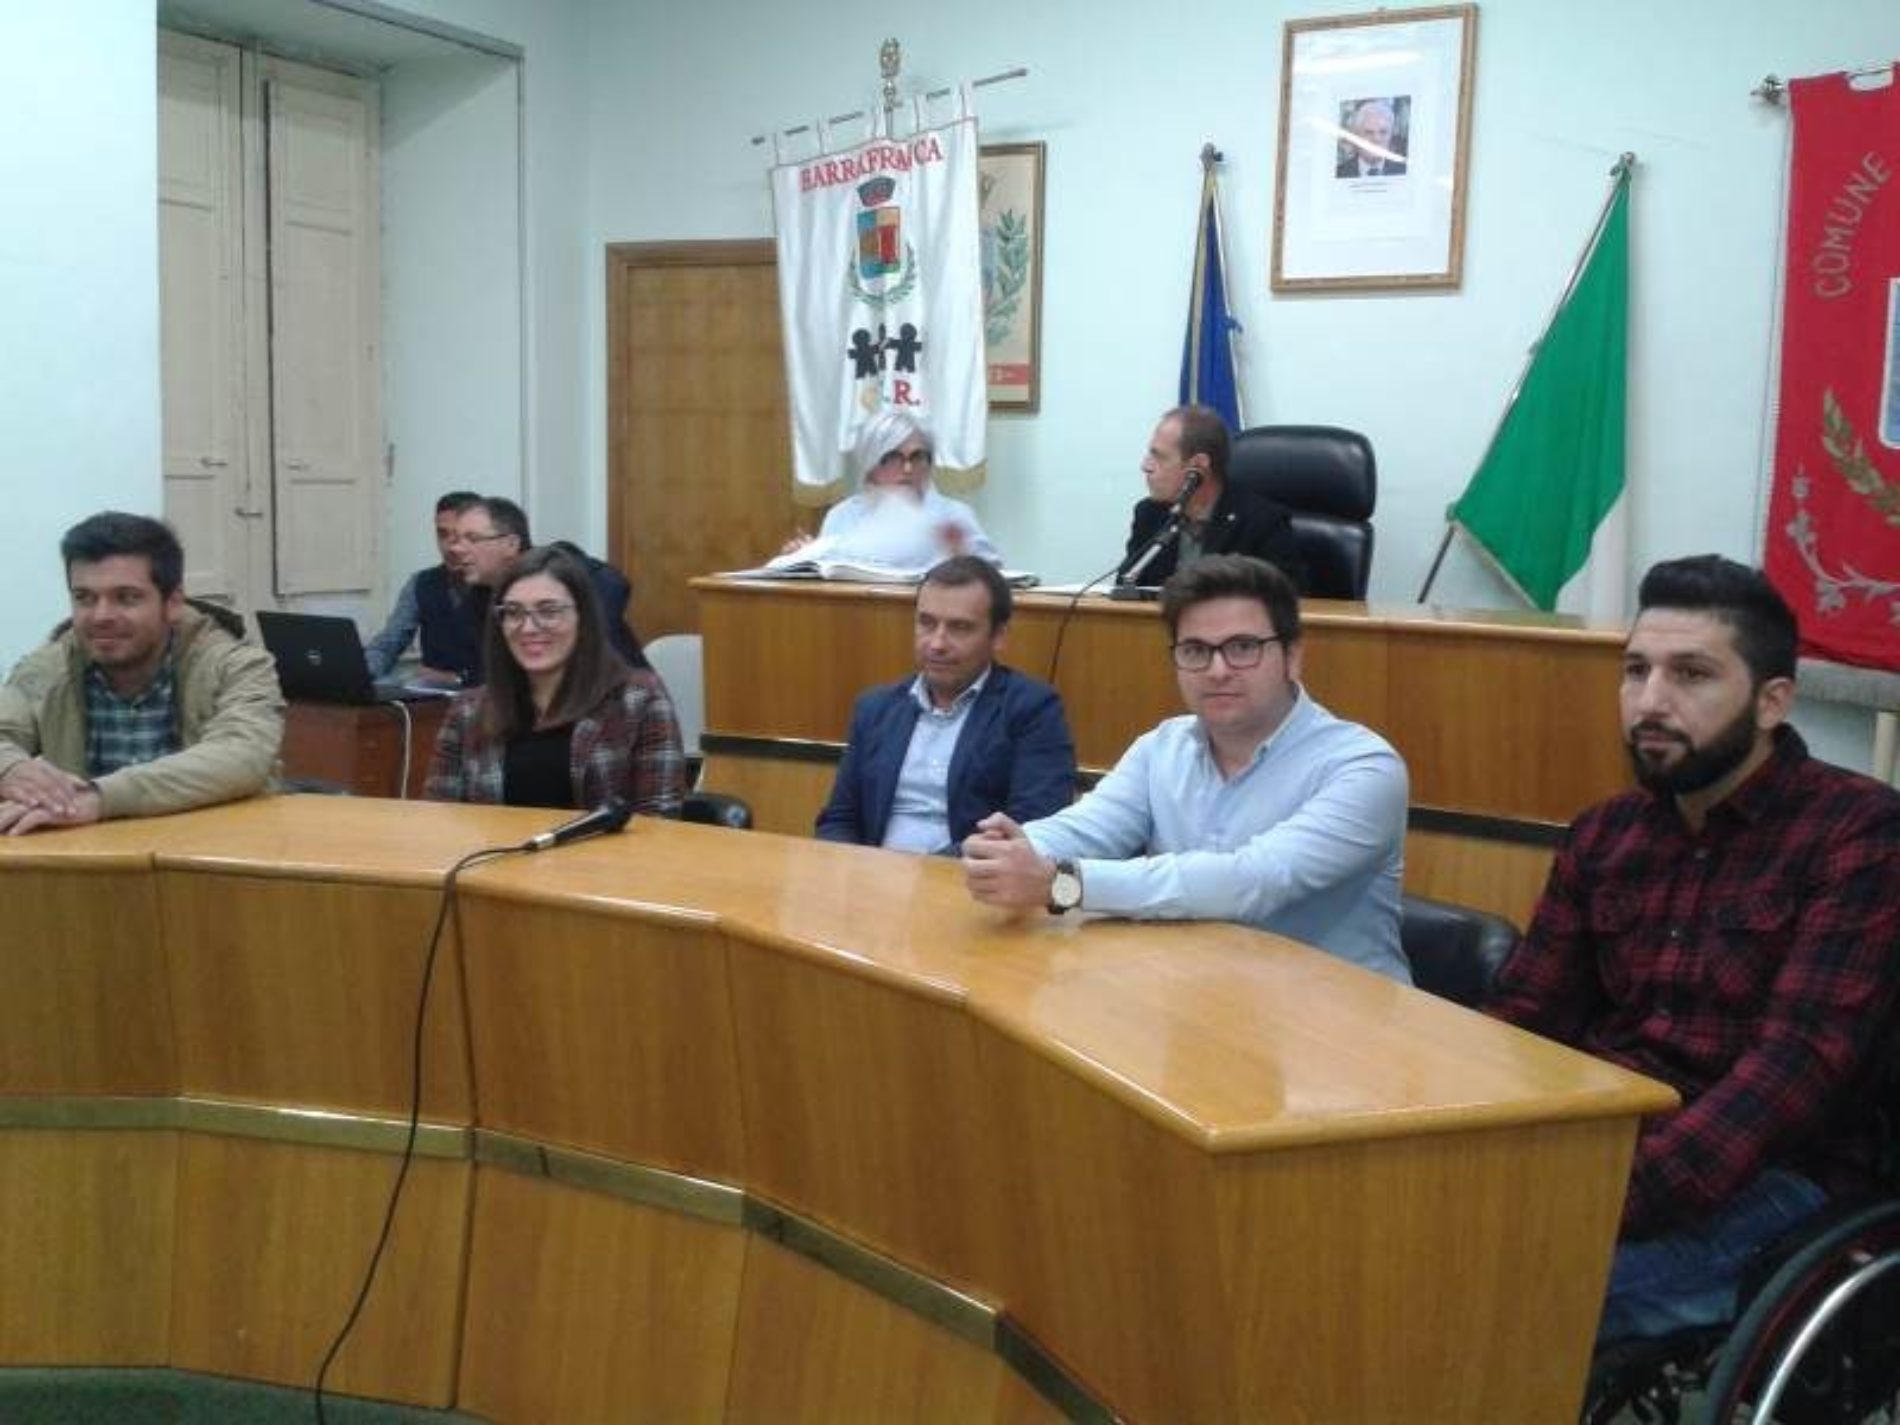 Barrafranca, respinto dal consiglio comunale l’atto di censura nei confronti del sindaco Fabio Accardi. Il sindaco: “Non si ripeterà più la nostra assenza”